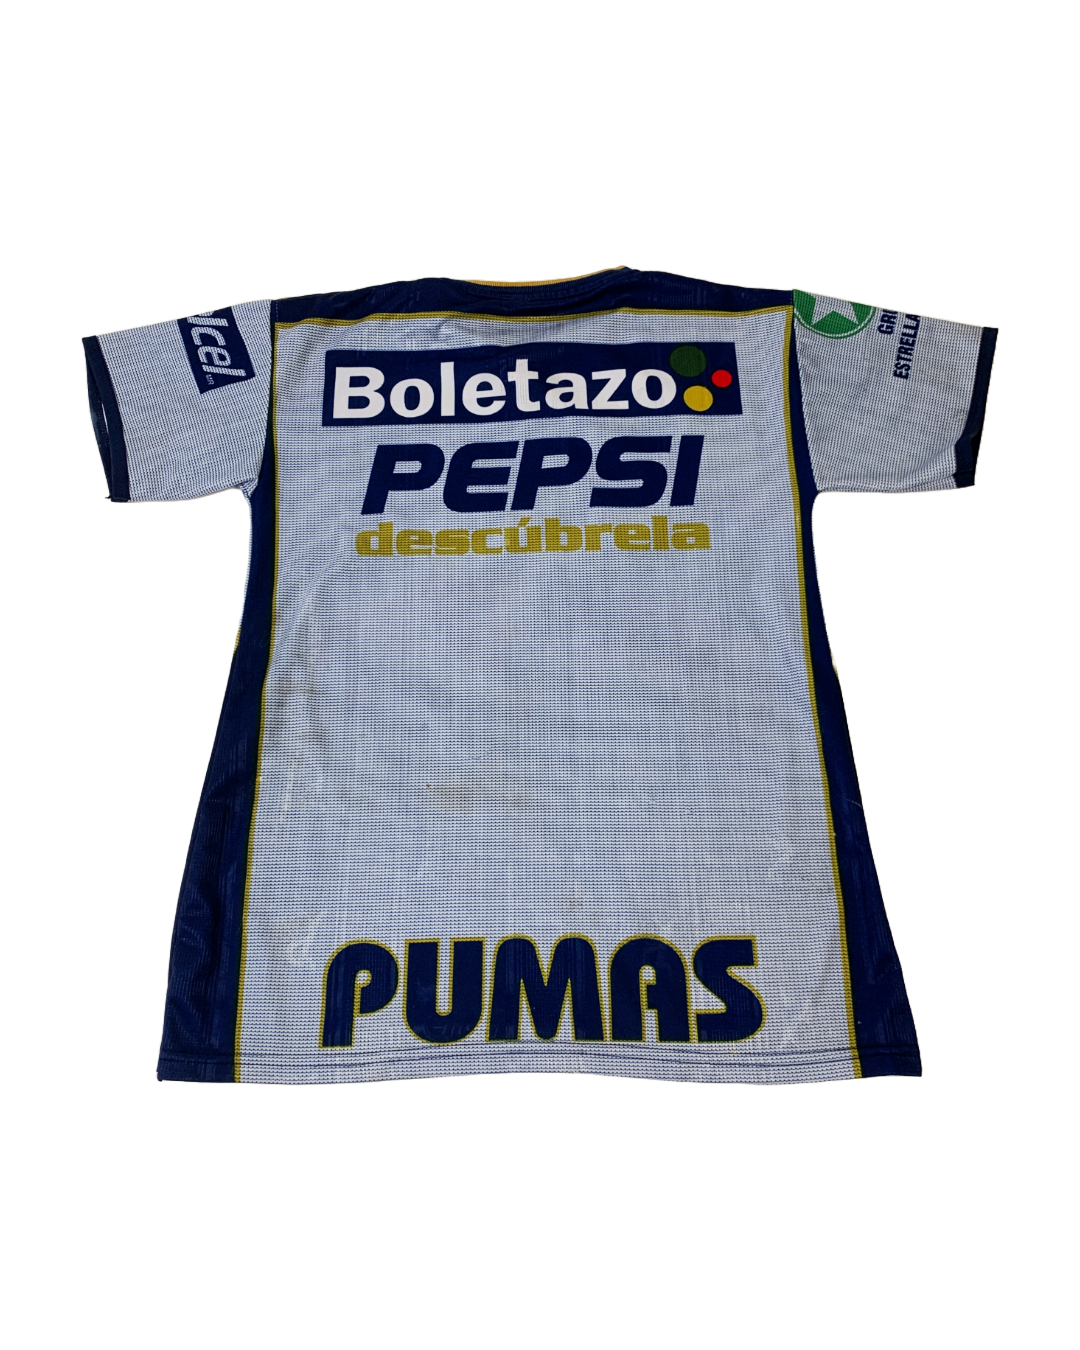 Pumas Campeon 2004 Vintage Jersey - S